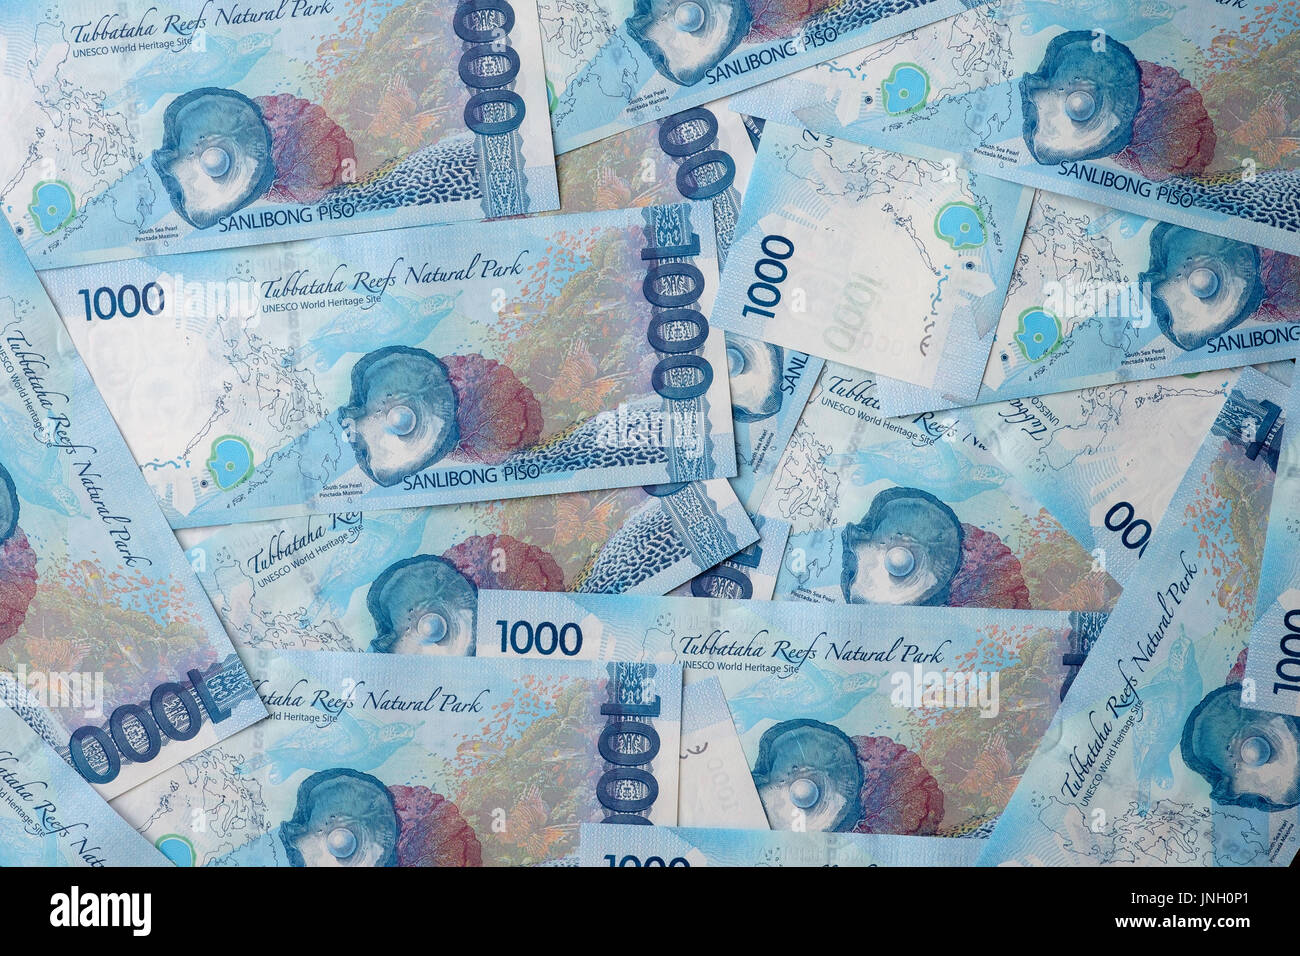 Philippinen Pesos in tausend Wert der Banknoten Stockfoto